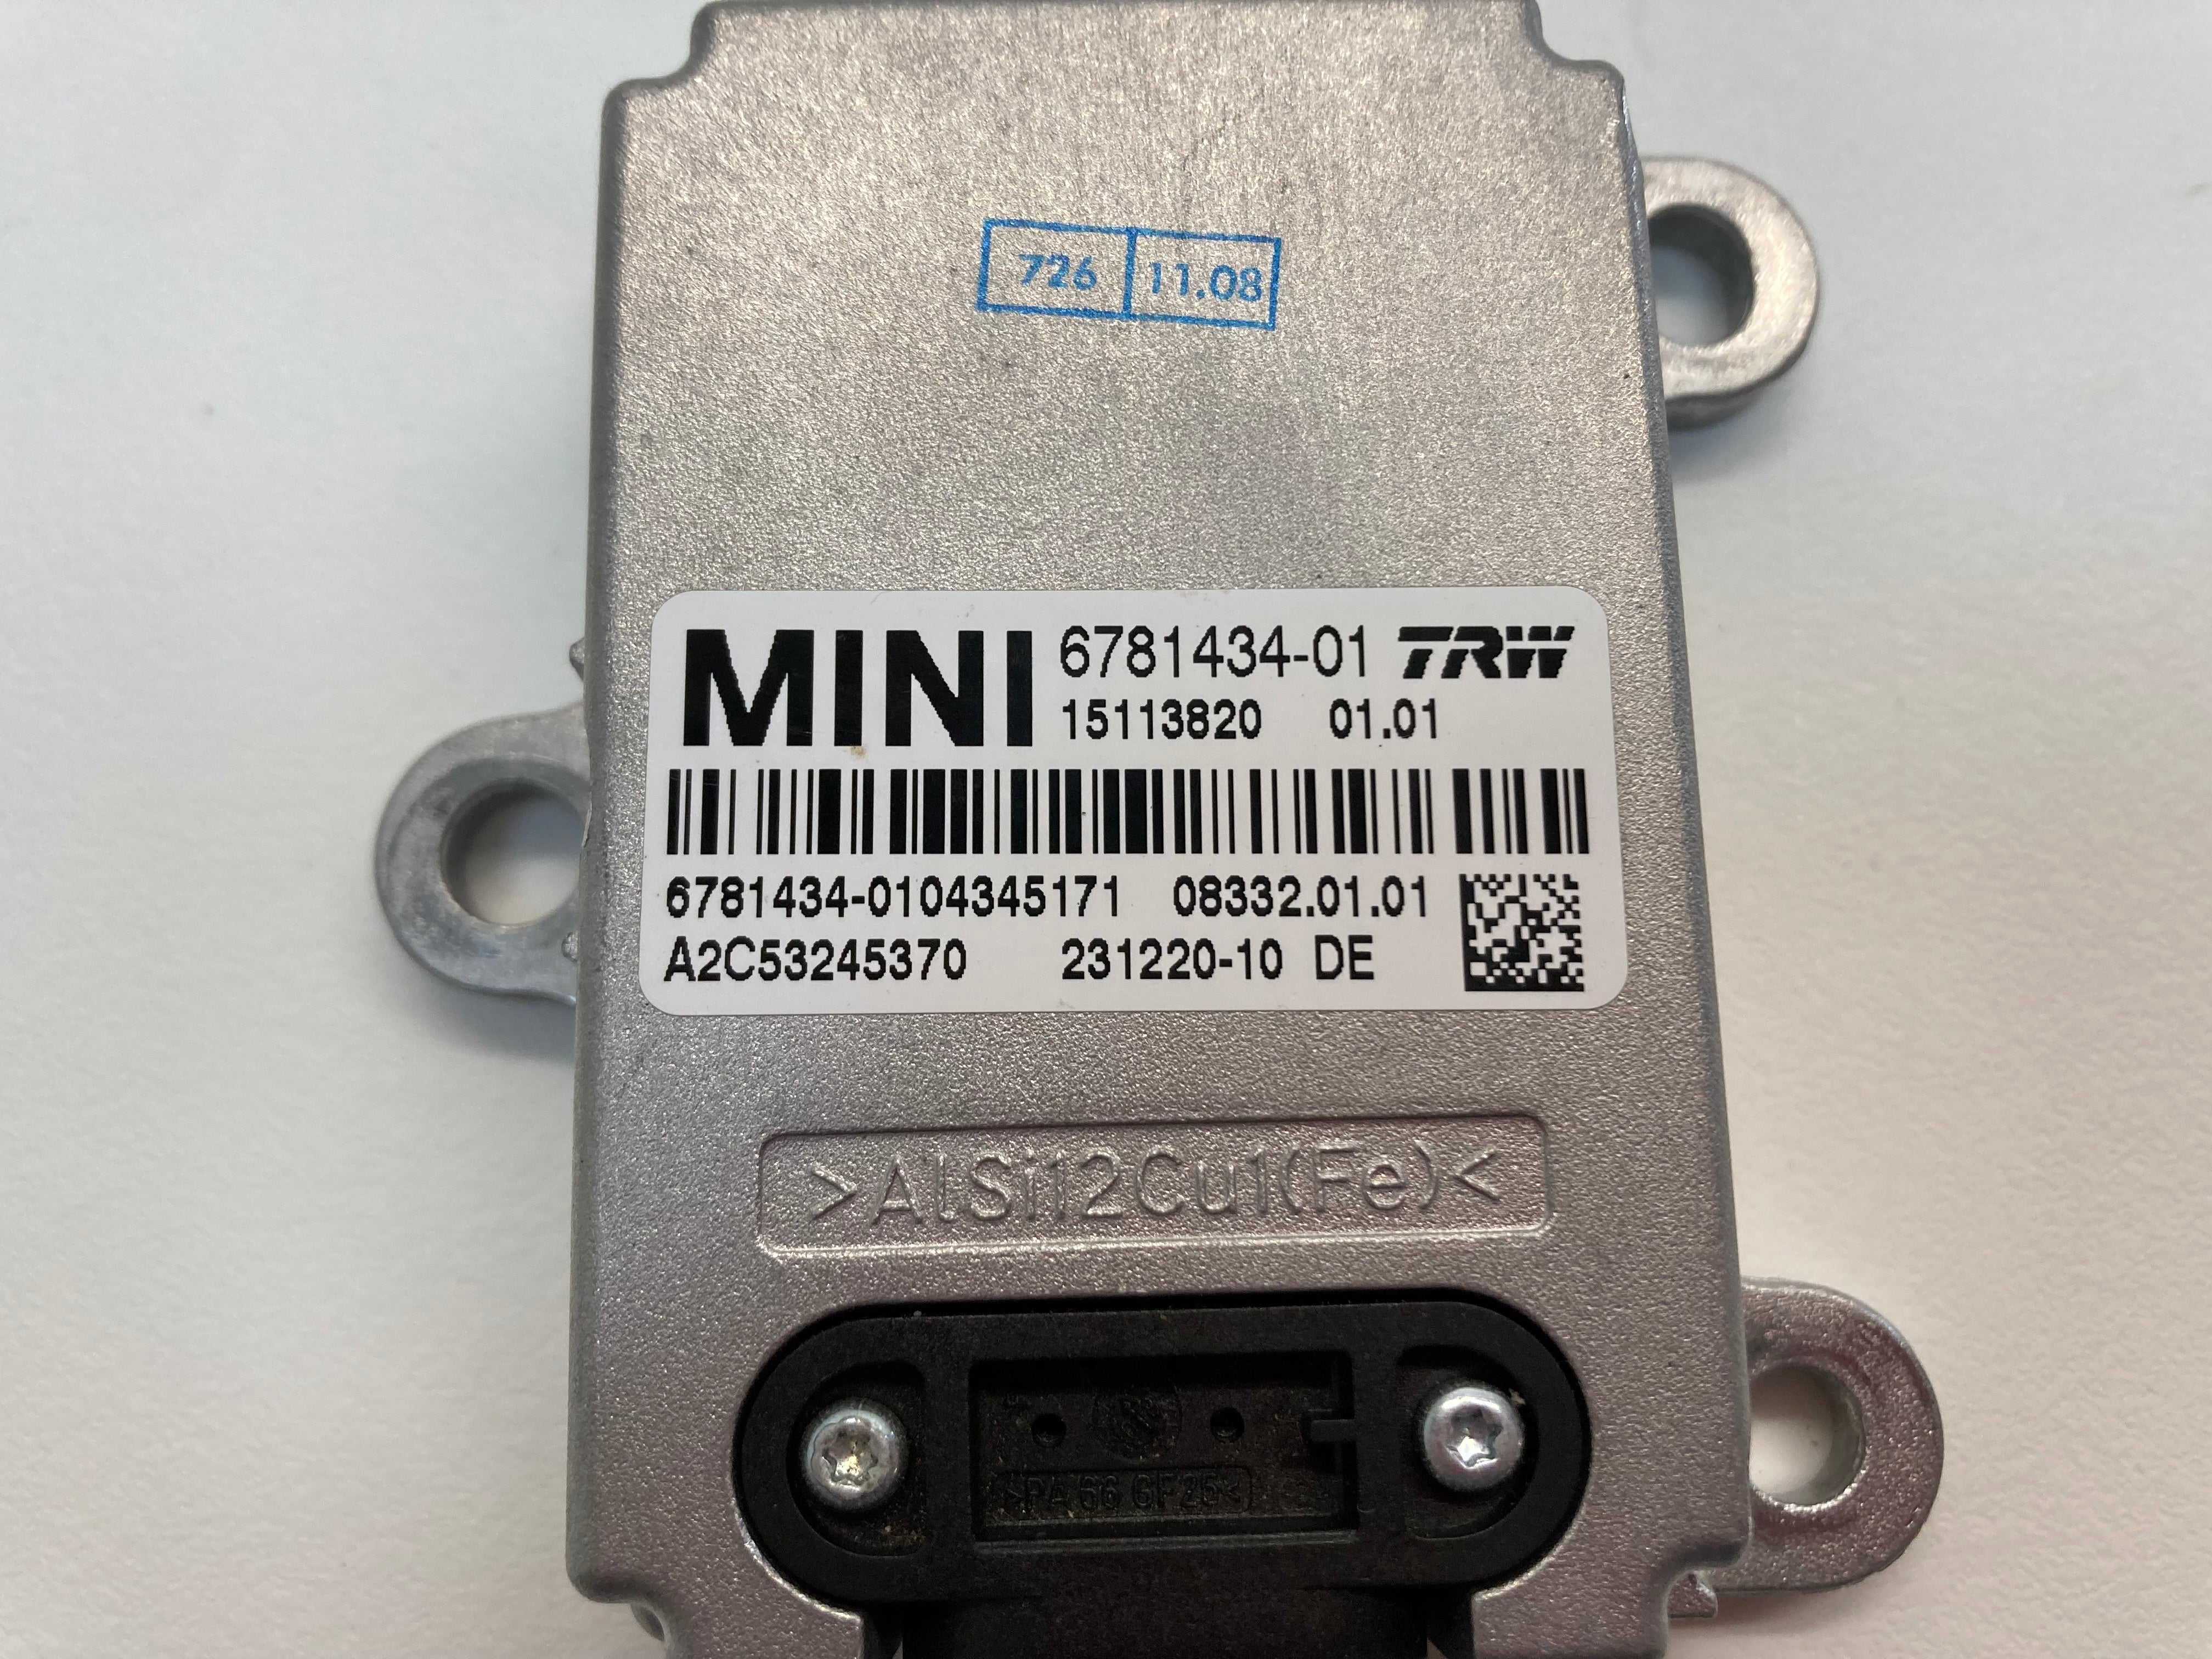 Mini Cooper Speed Control YAW Rate Sensor 34526781434 07-10 R55 R56 R57